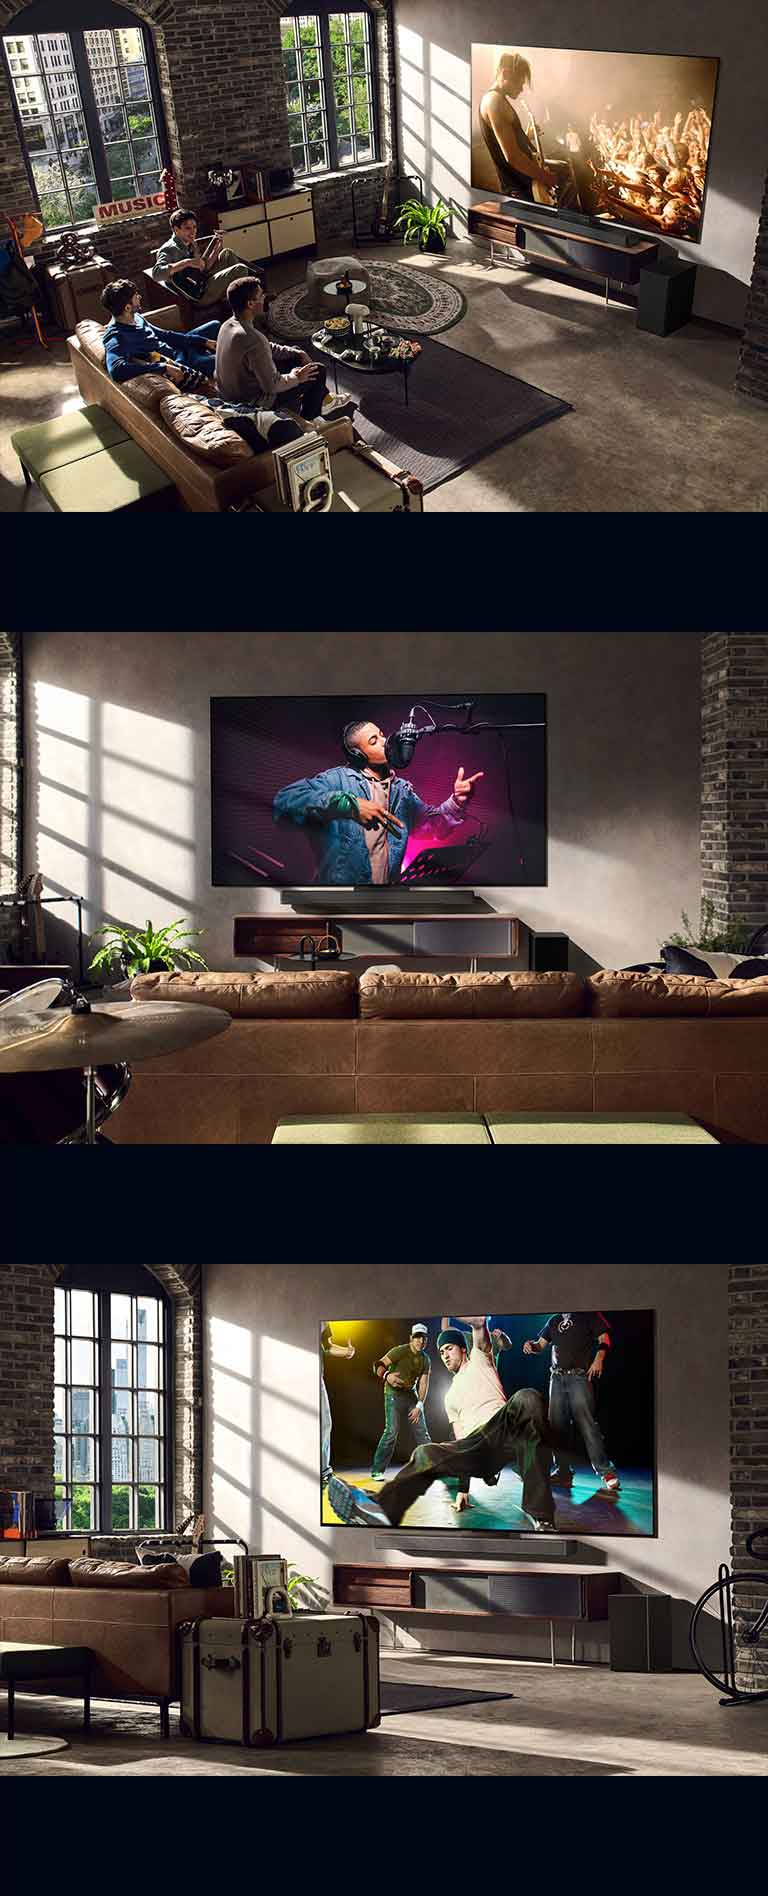 Se ven imágenes de tres estilos de vida diferentes. De arriba abajo: tres hombres disfrutan del vídeo de un concierto en el salón. Hay un LG TV en la pared que muestra una escena de grabación de música, y el LG TV en la pared que muestra una escena de break dance en una vista diagonal.